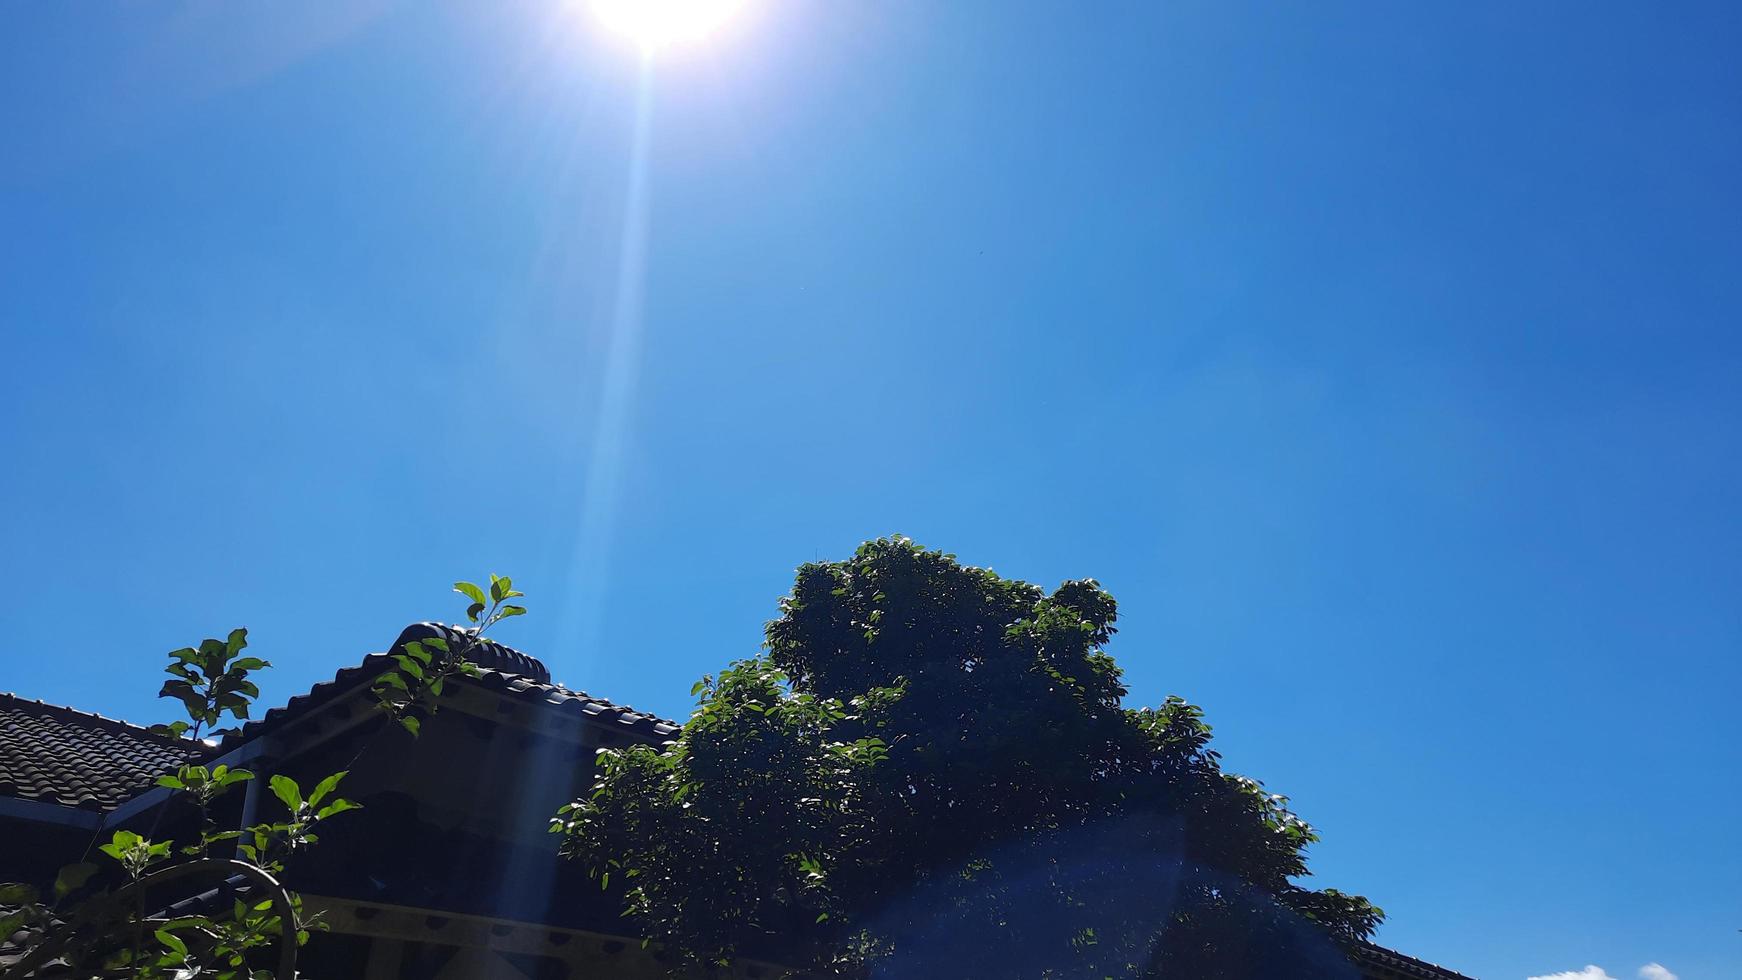 cielo azul con el brillo del sol caliente durante el día en la ciudad de bandung, indonesia foto